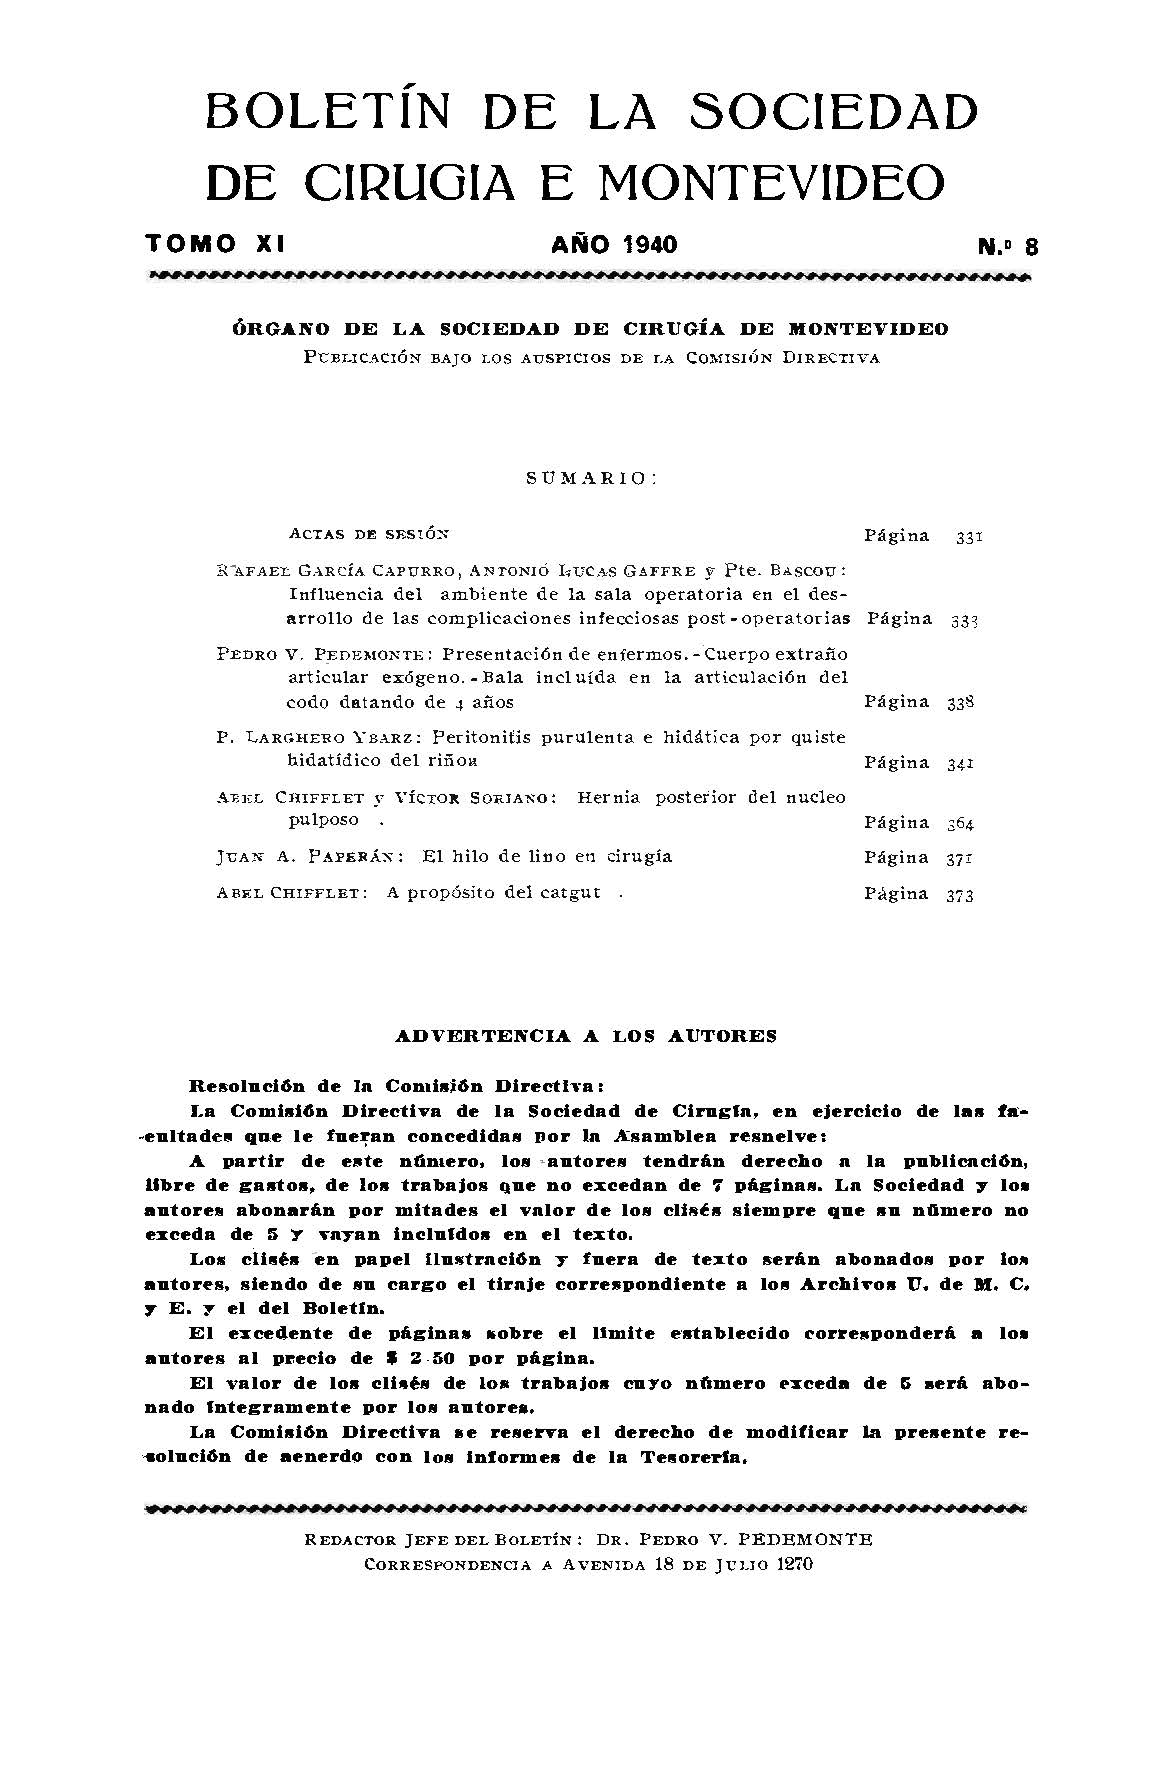 					Ver Vol. 11 Núm. 8 (1940): Boletín de la Sociedad de Cirugía de Montevideo
				